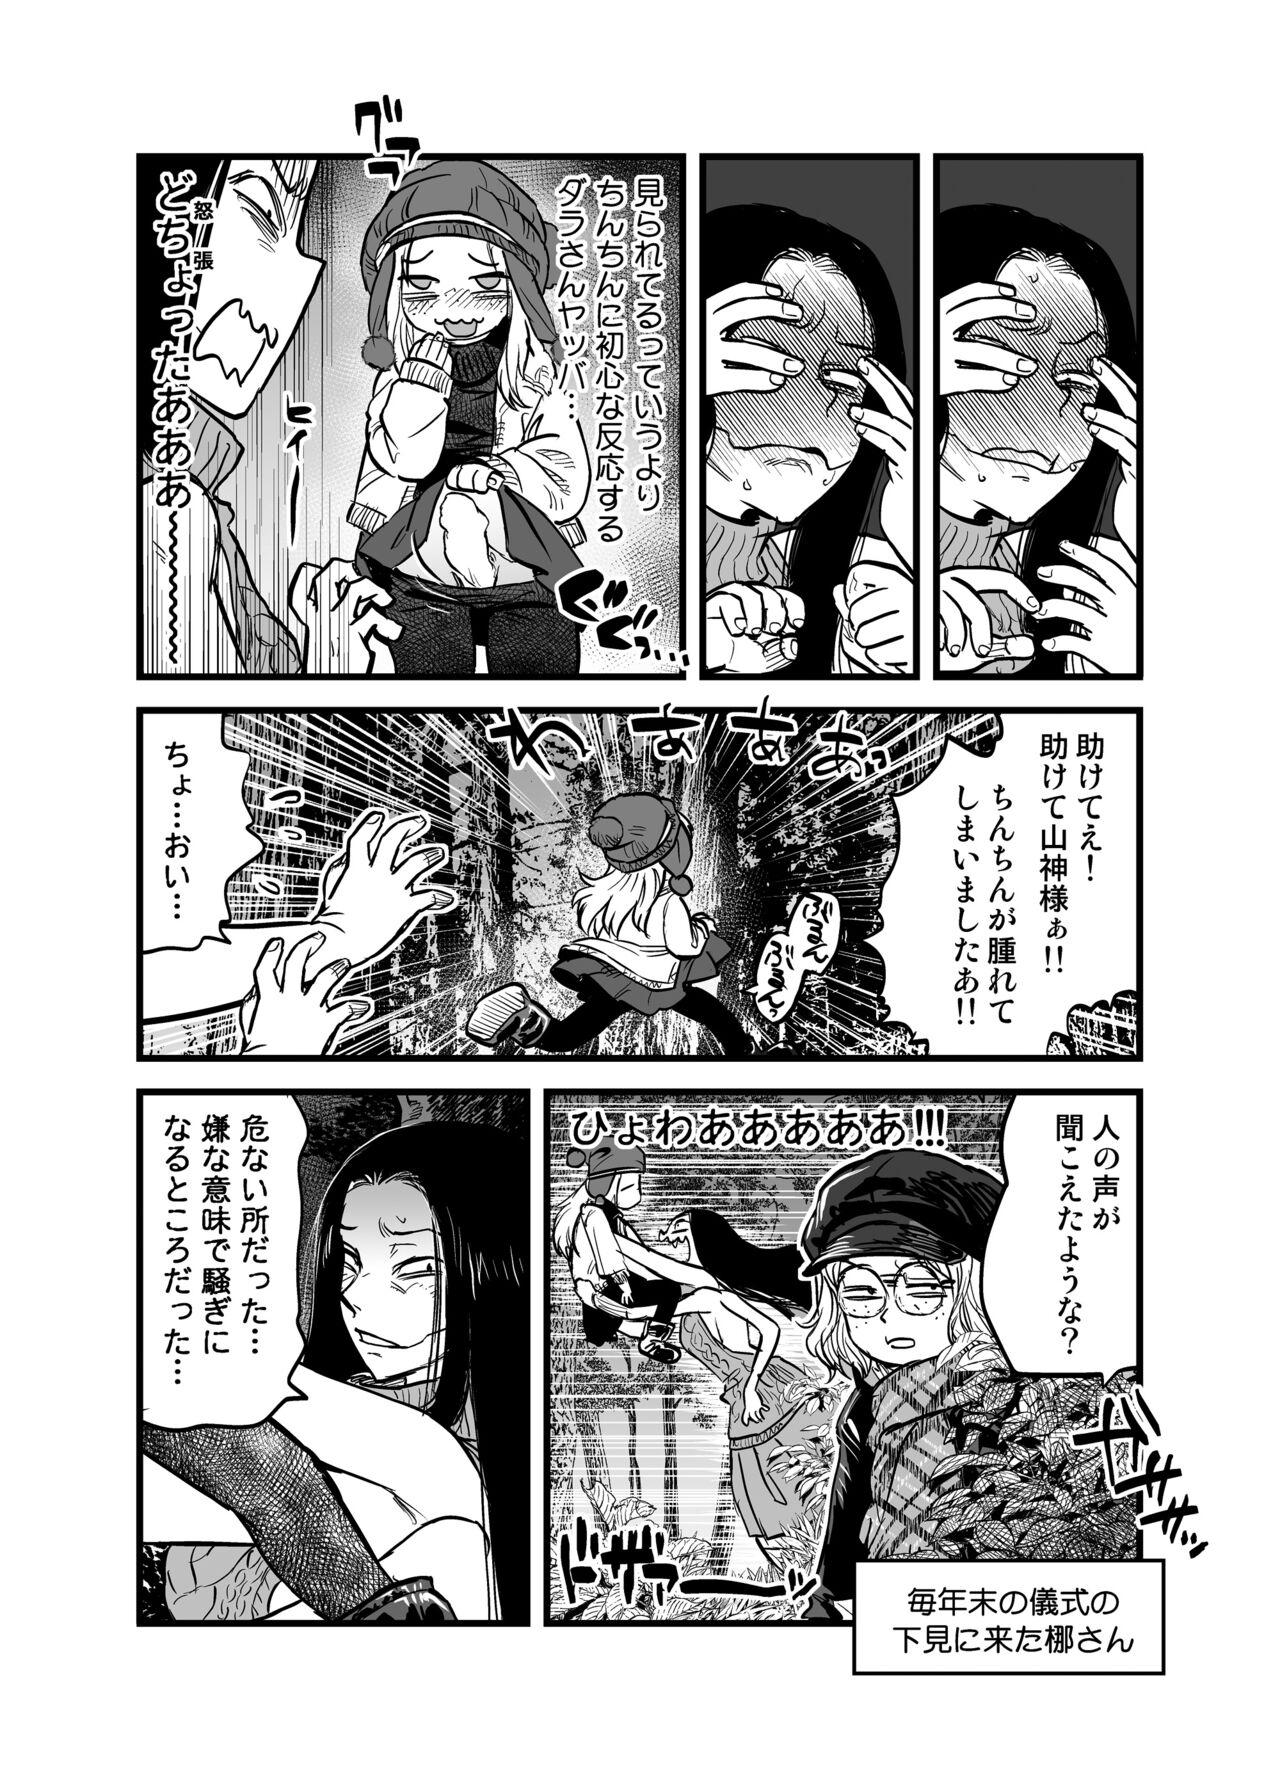 Fun Ryou wa no Dara-san Koushiki no you de Hikoushiki na Inchiki Hon Boob - Page 4